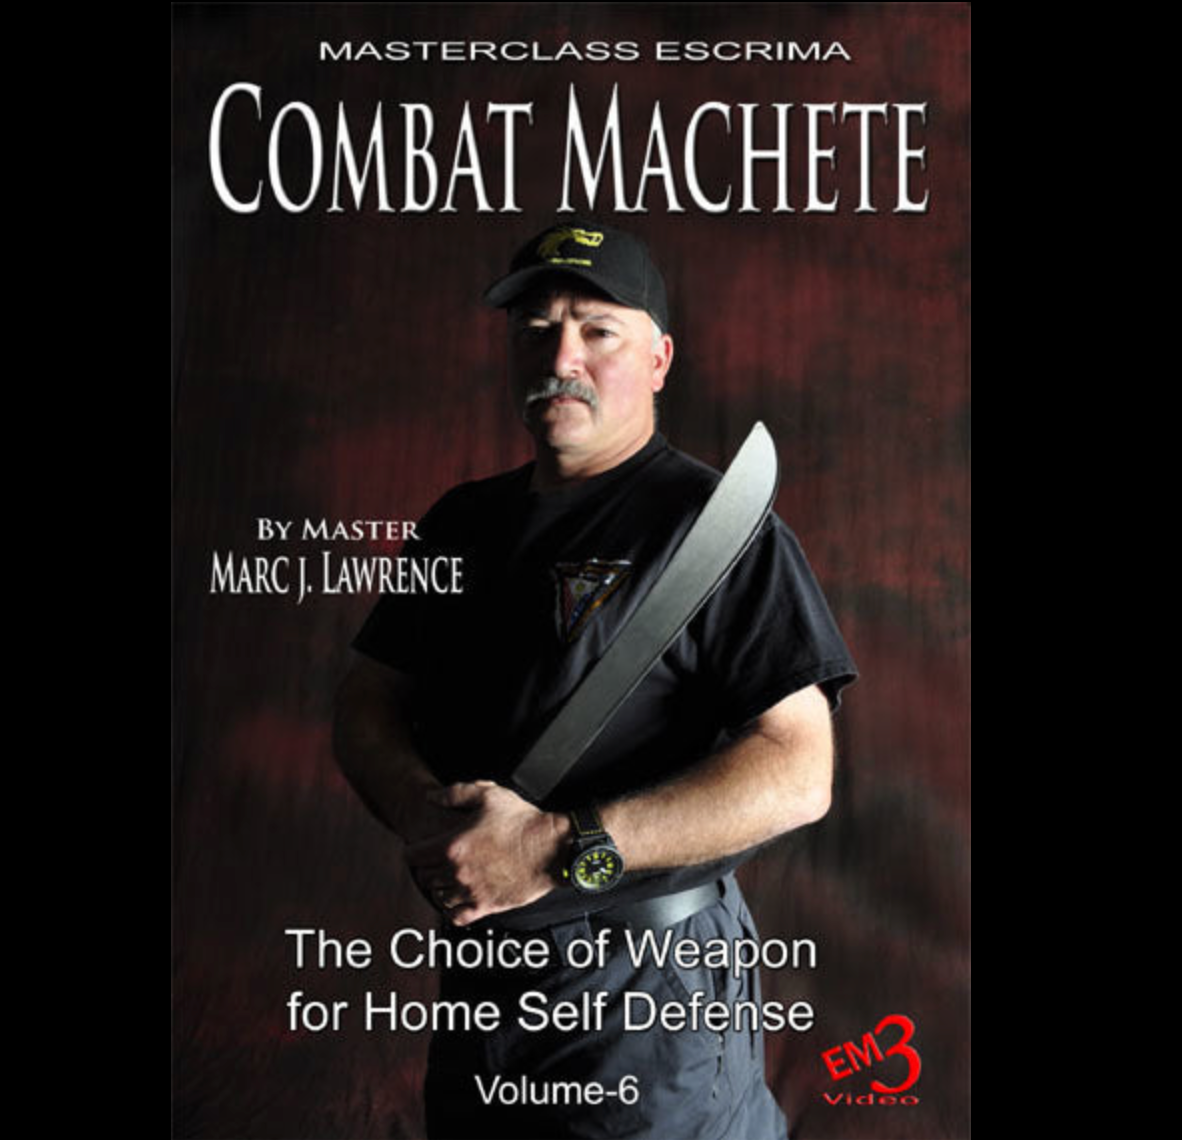 Combat Machete Home Self Defense de Marc Lawrence (Bajo demanda)